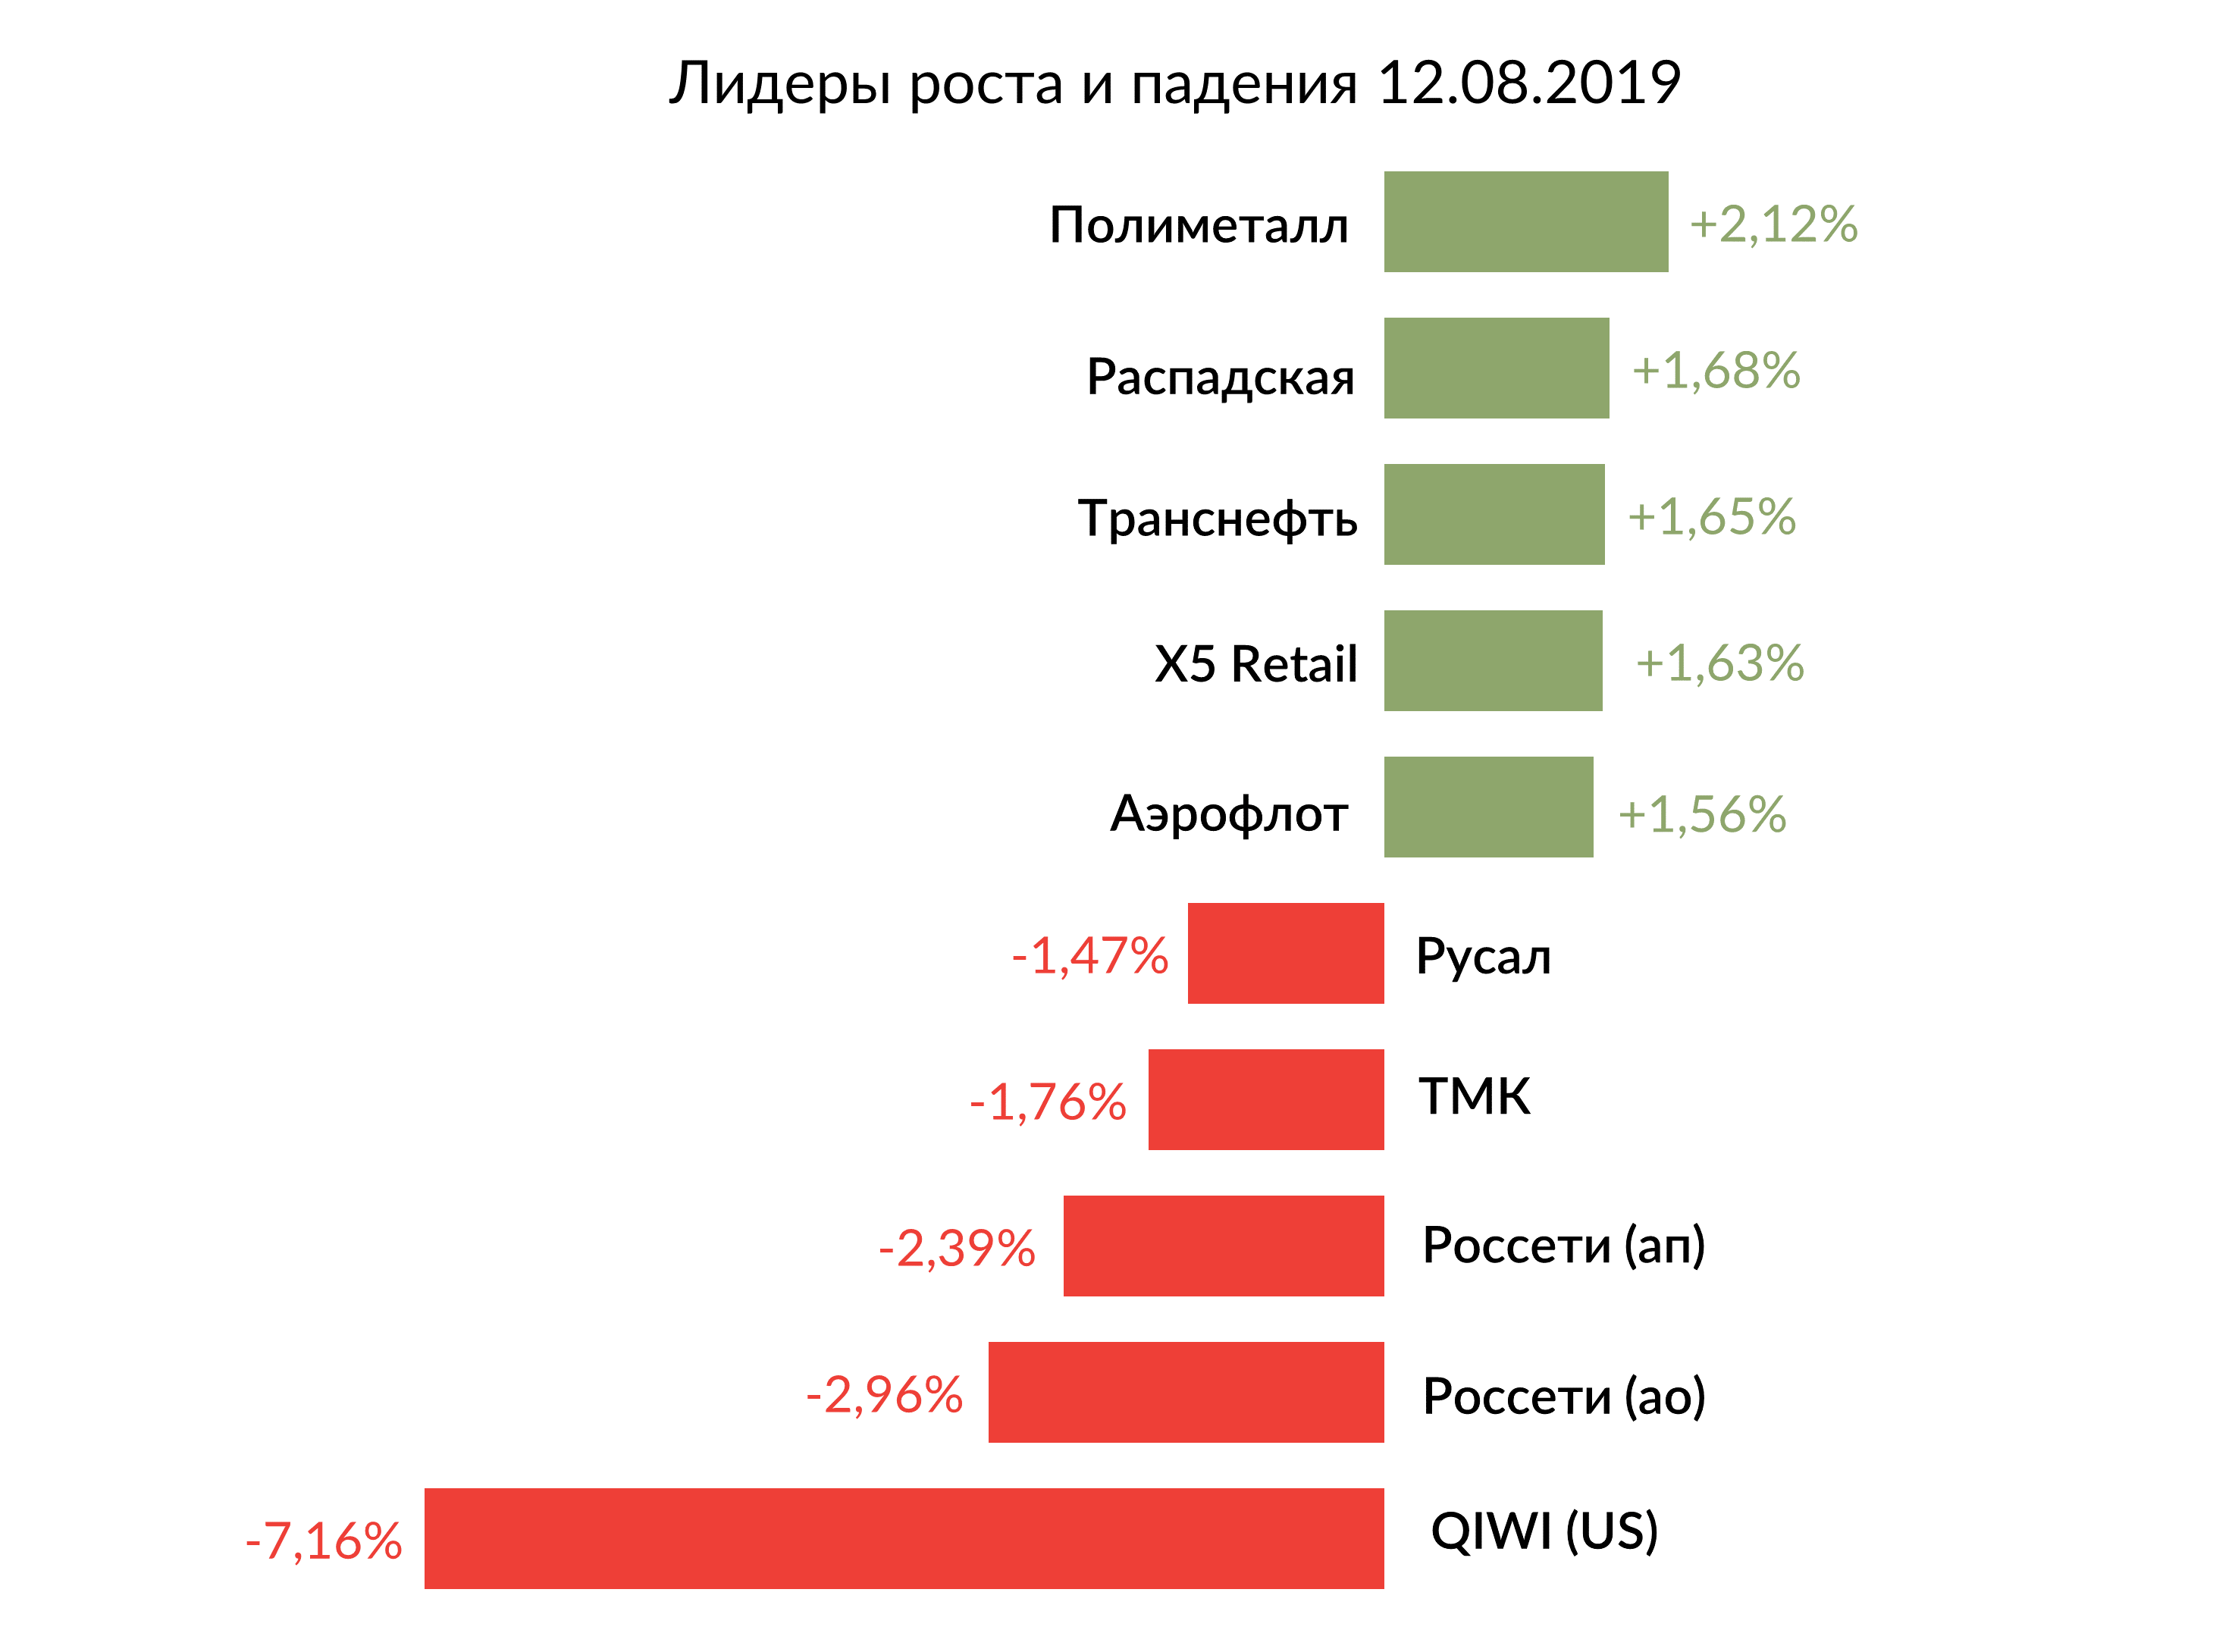 Лидеры роста и падения российского рынка на 12 августа